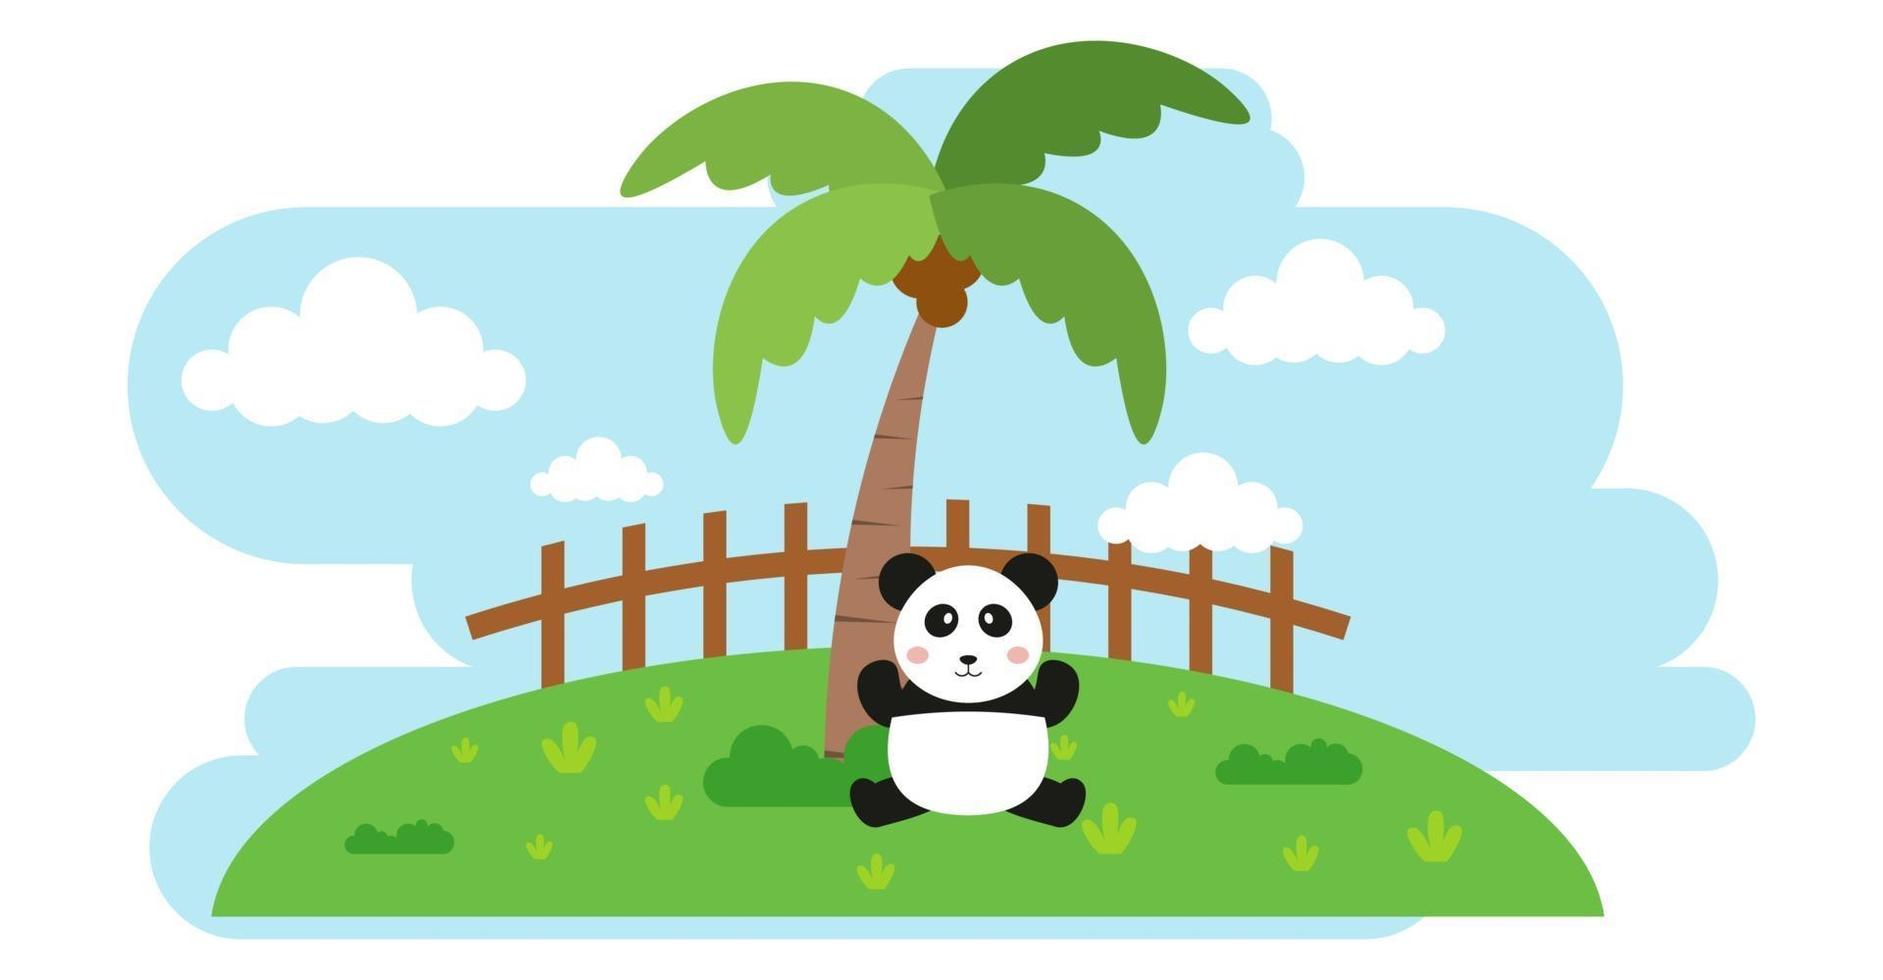 Panda Vektor niedliche Tiere im Cartoon-Stil, wildes Tier, Designs für Babykleidung. handgezeichnete Zeichen